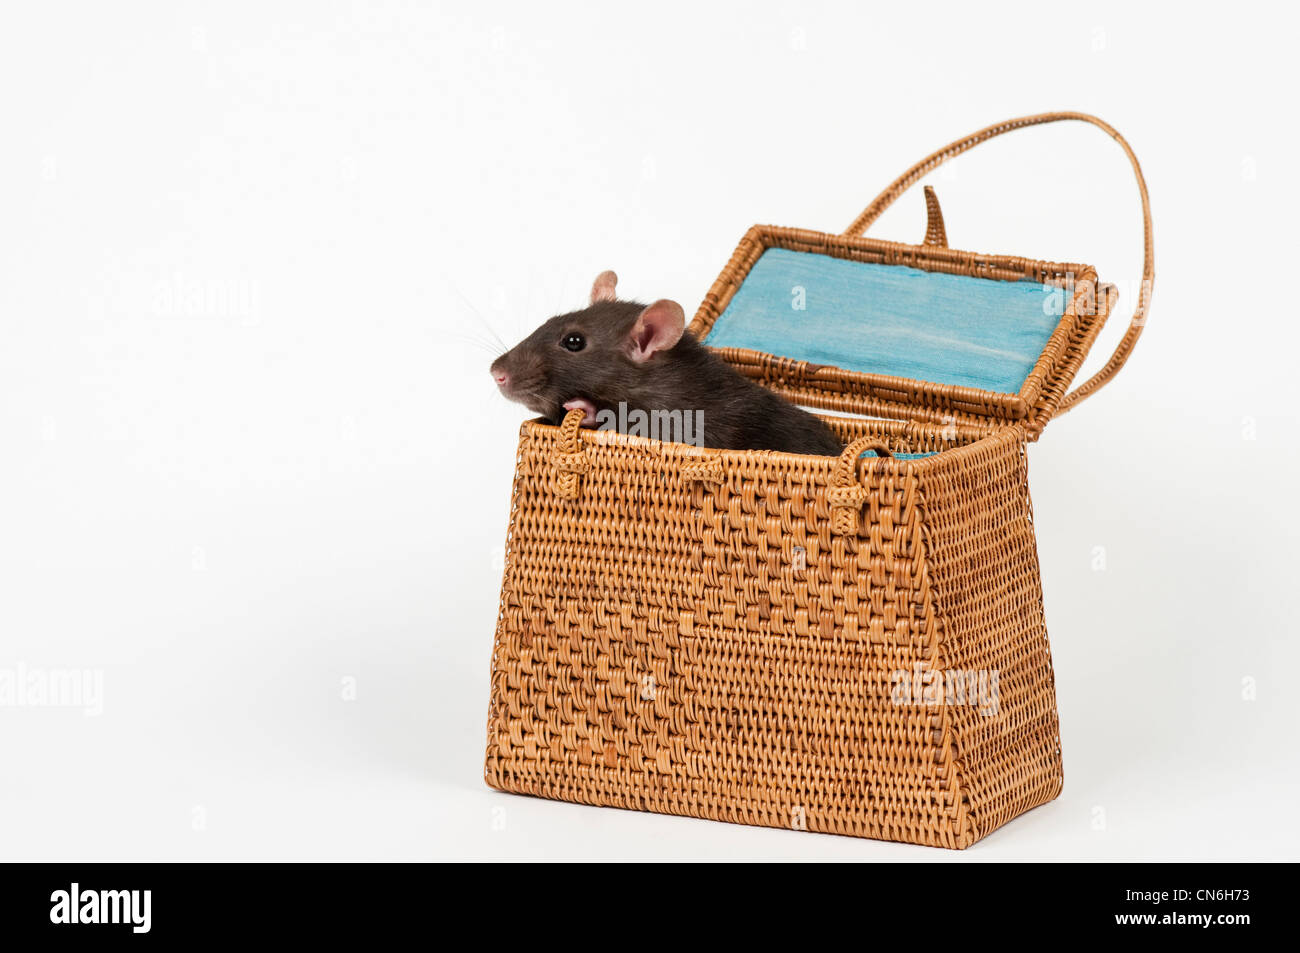 Haustier Ratte in einer Korb-Handtasche. Stockfoto